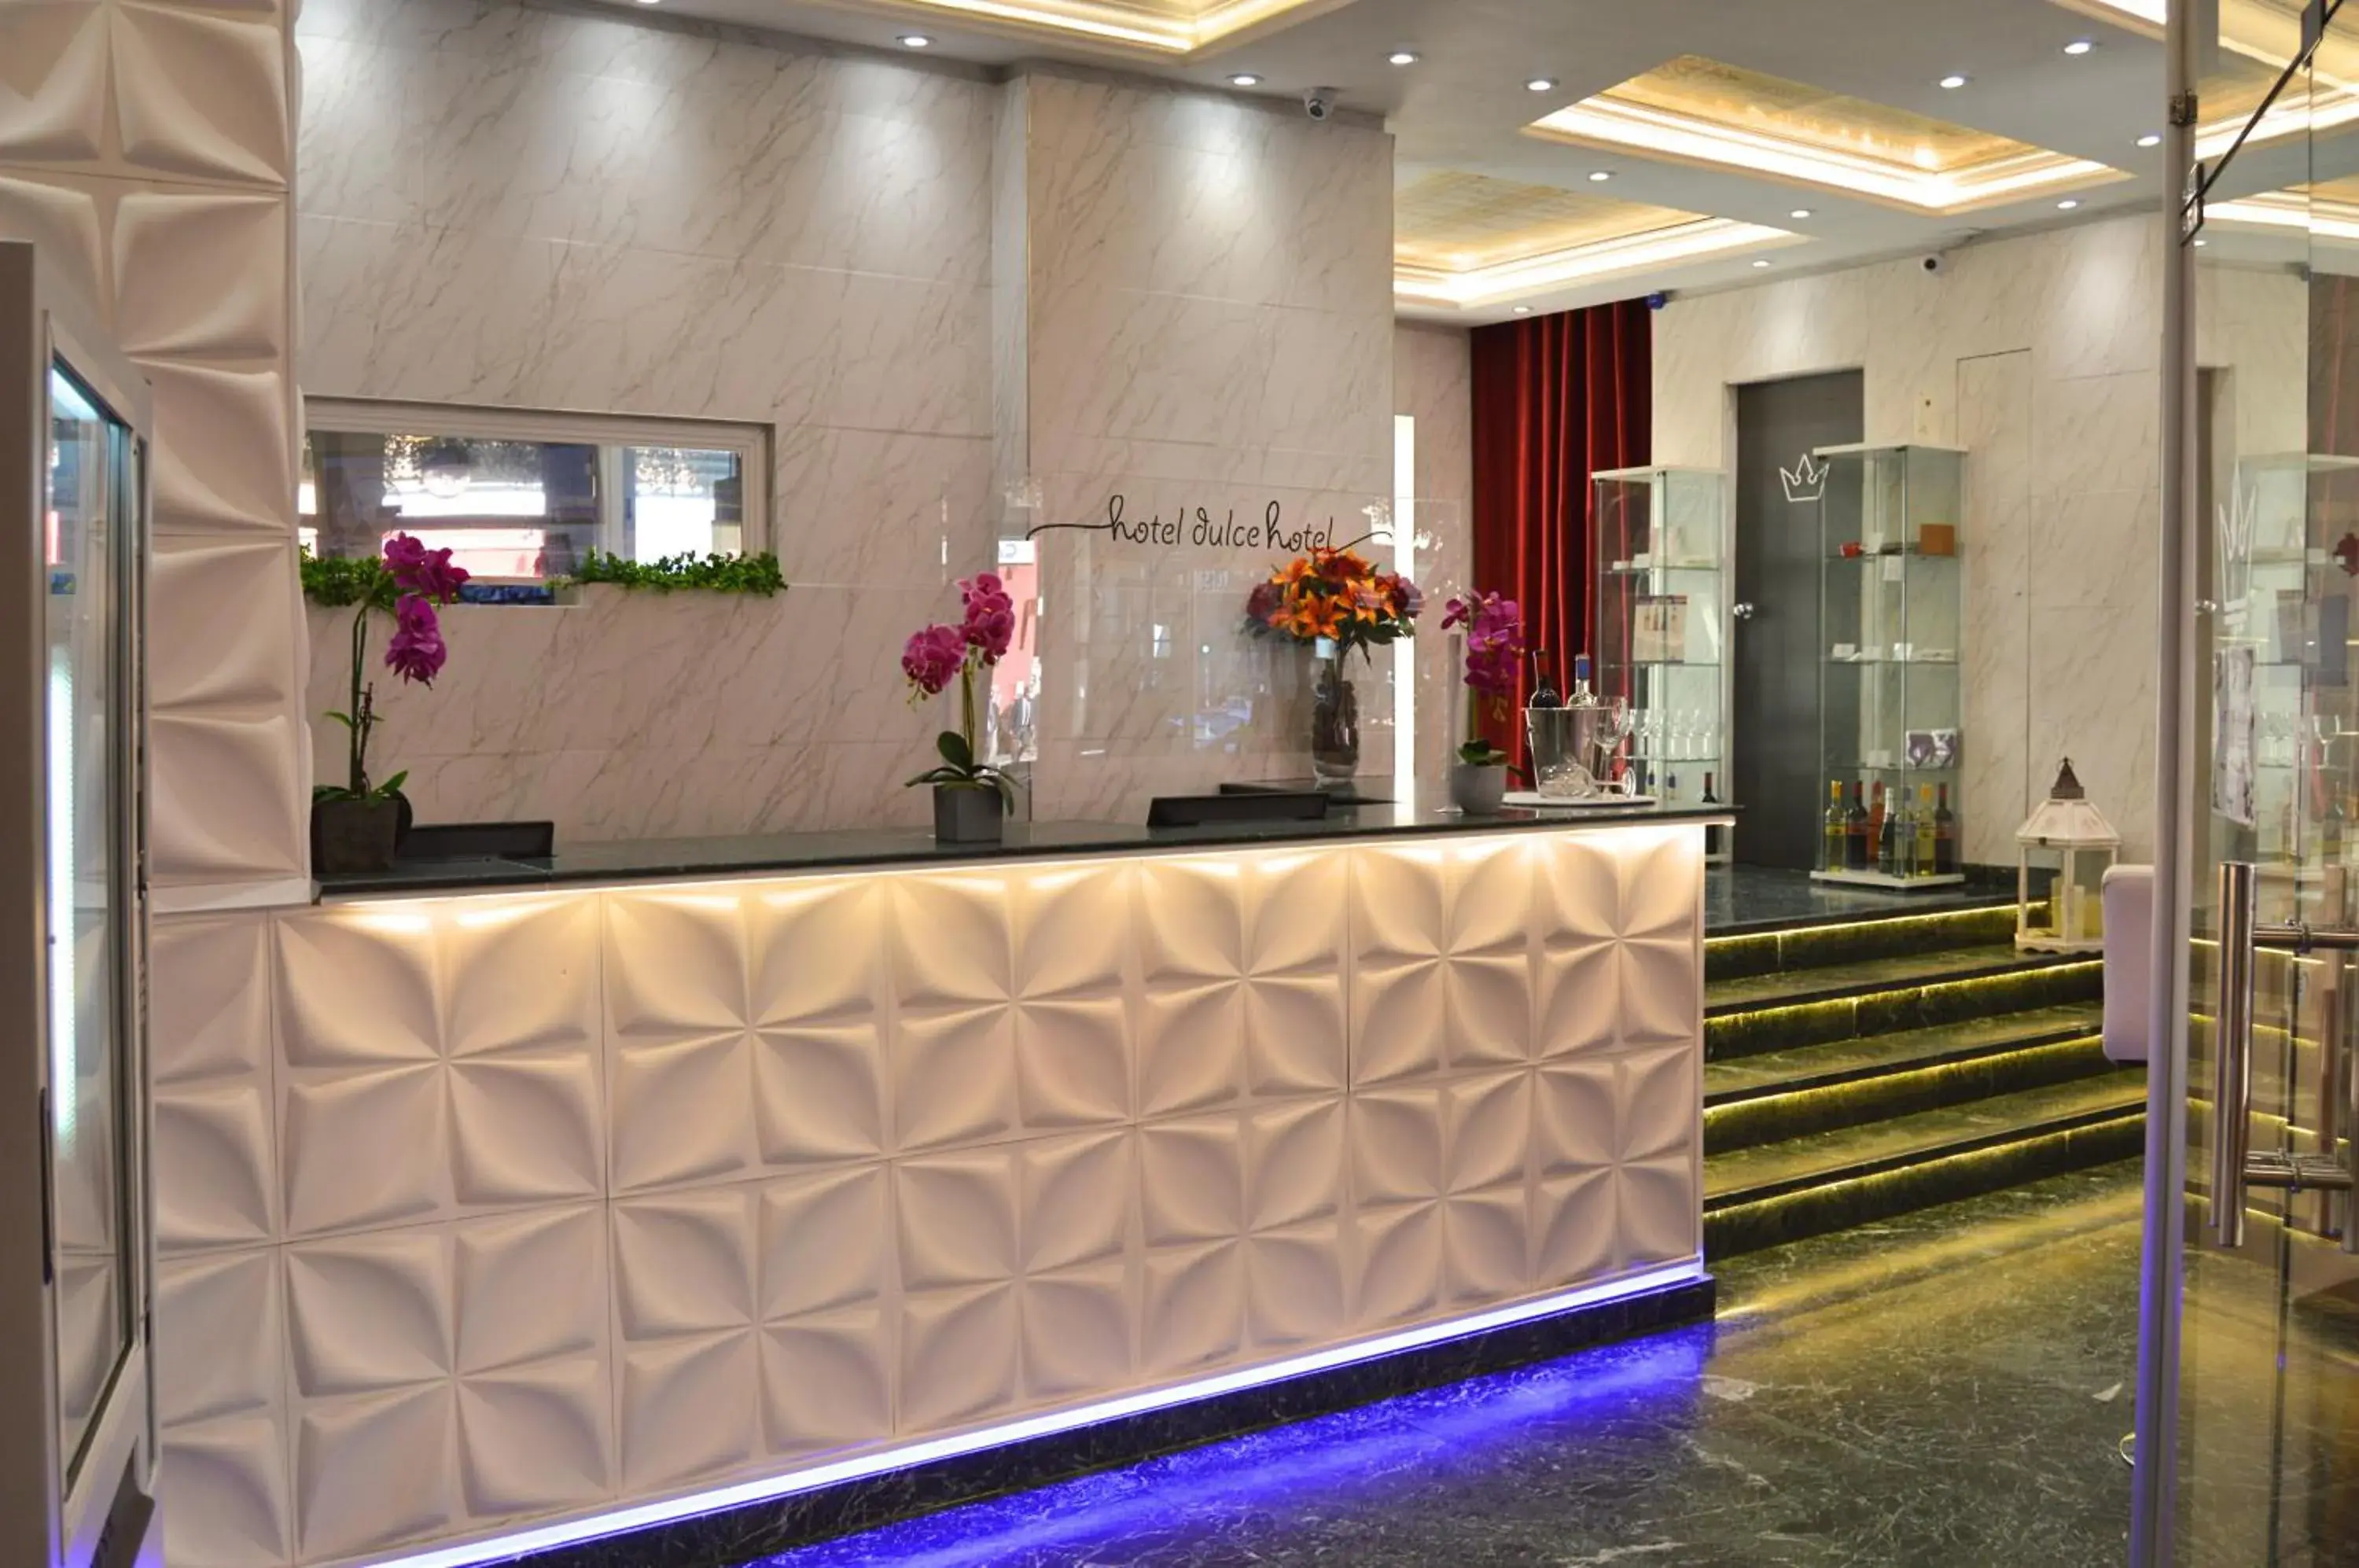 Lobby or reception in Erase un Hotel